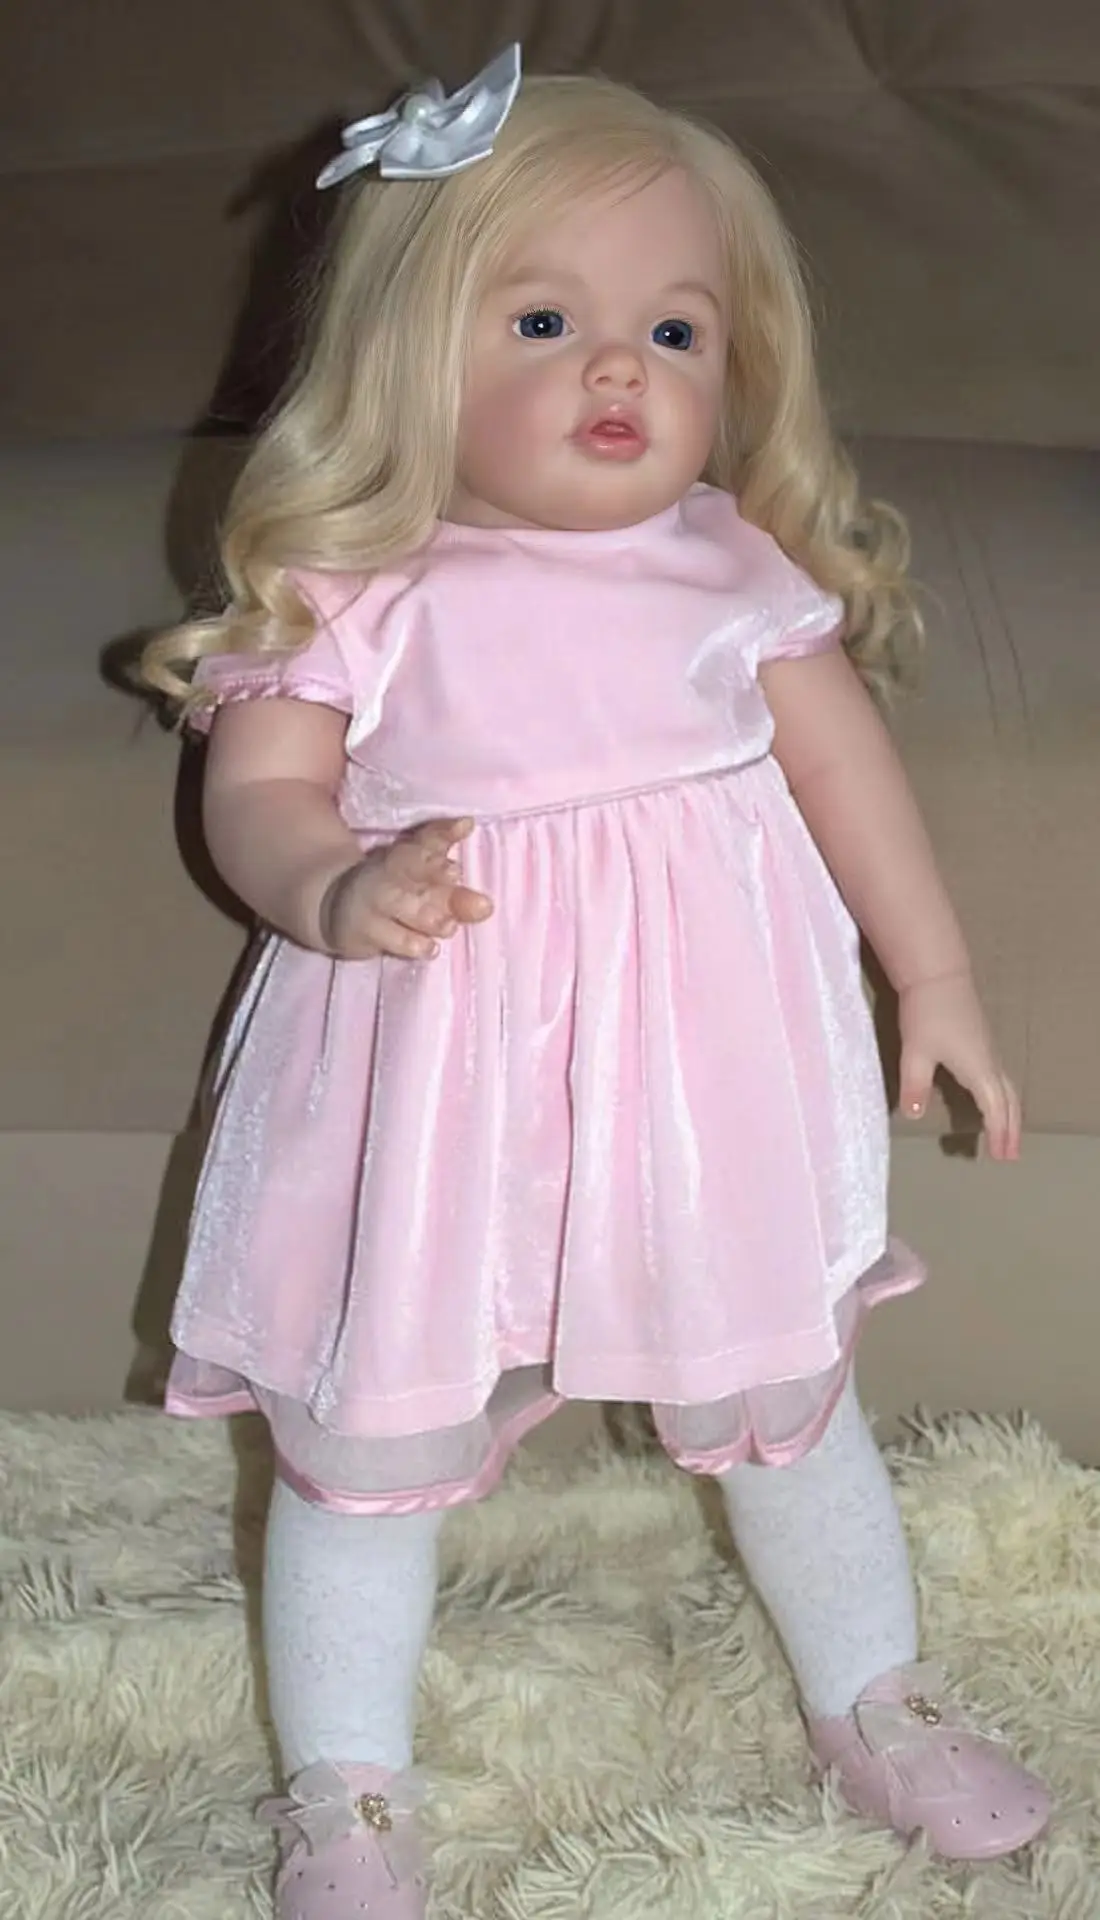 70 См Реалистичная 3D Раскрашенная Кукла Бетти Бебе Реборн Muñecas Reborn Para Niñas bebe reborn reallista В Милой Одежде 5